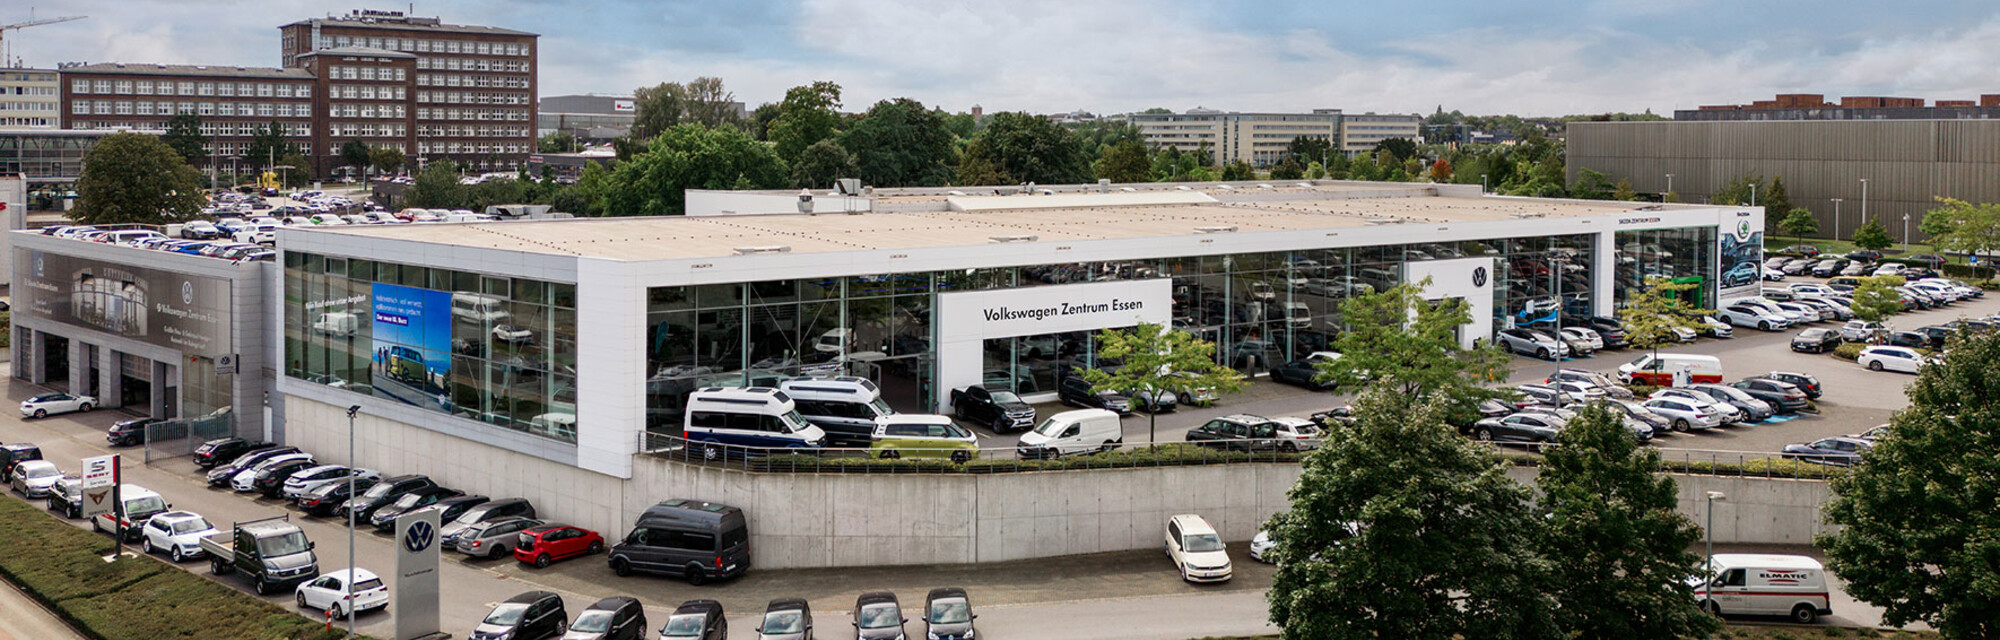 Volkswagen Zentrum Essen